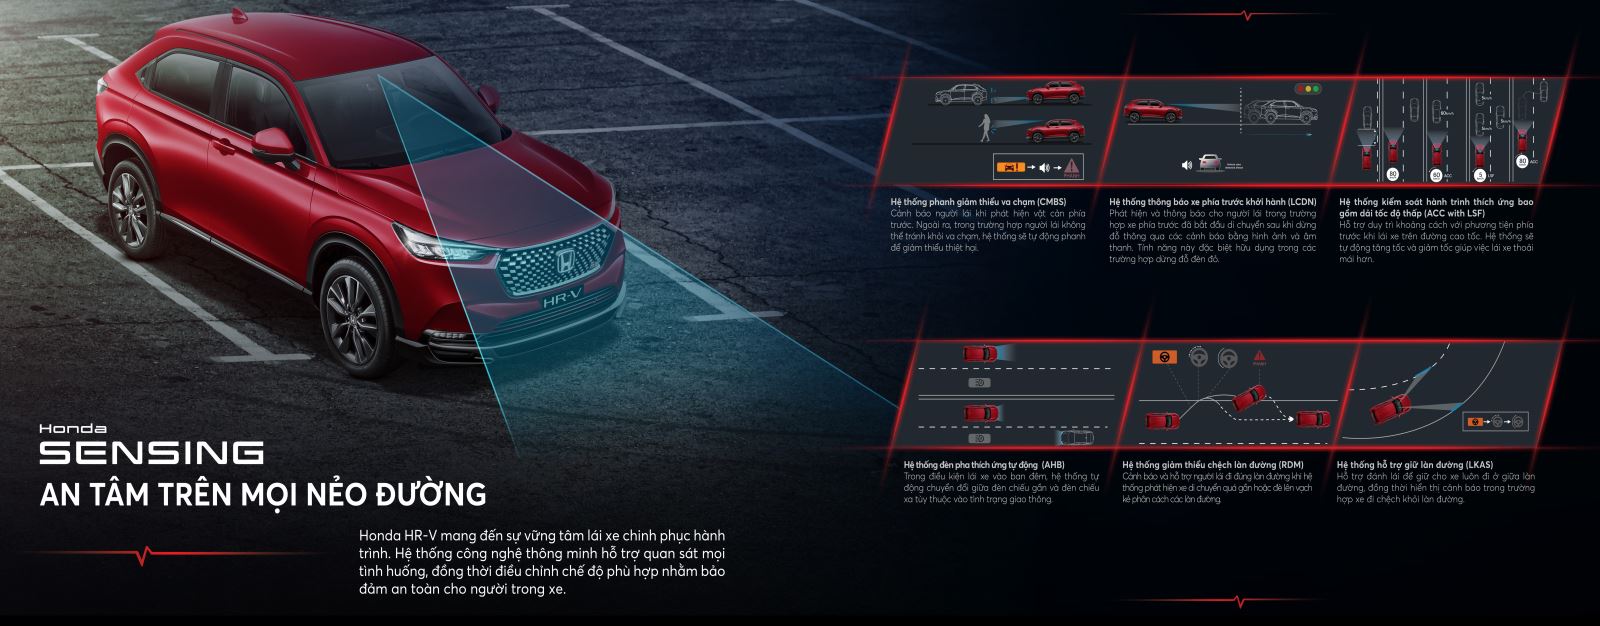 Honda HR-V phiên bản L cũng được trang bị hệ thống an toàn tiên tiến Honda SENSING